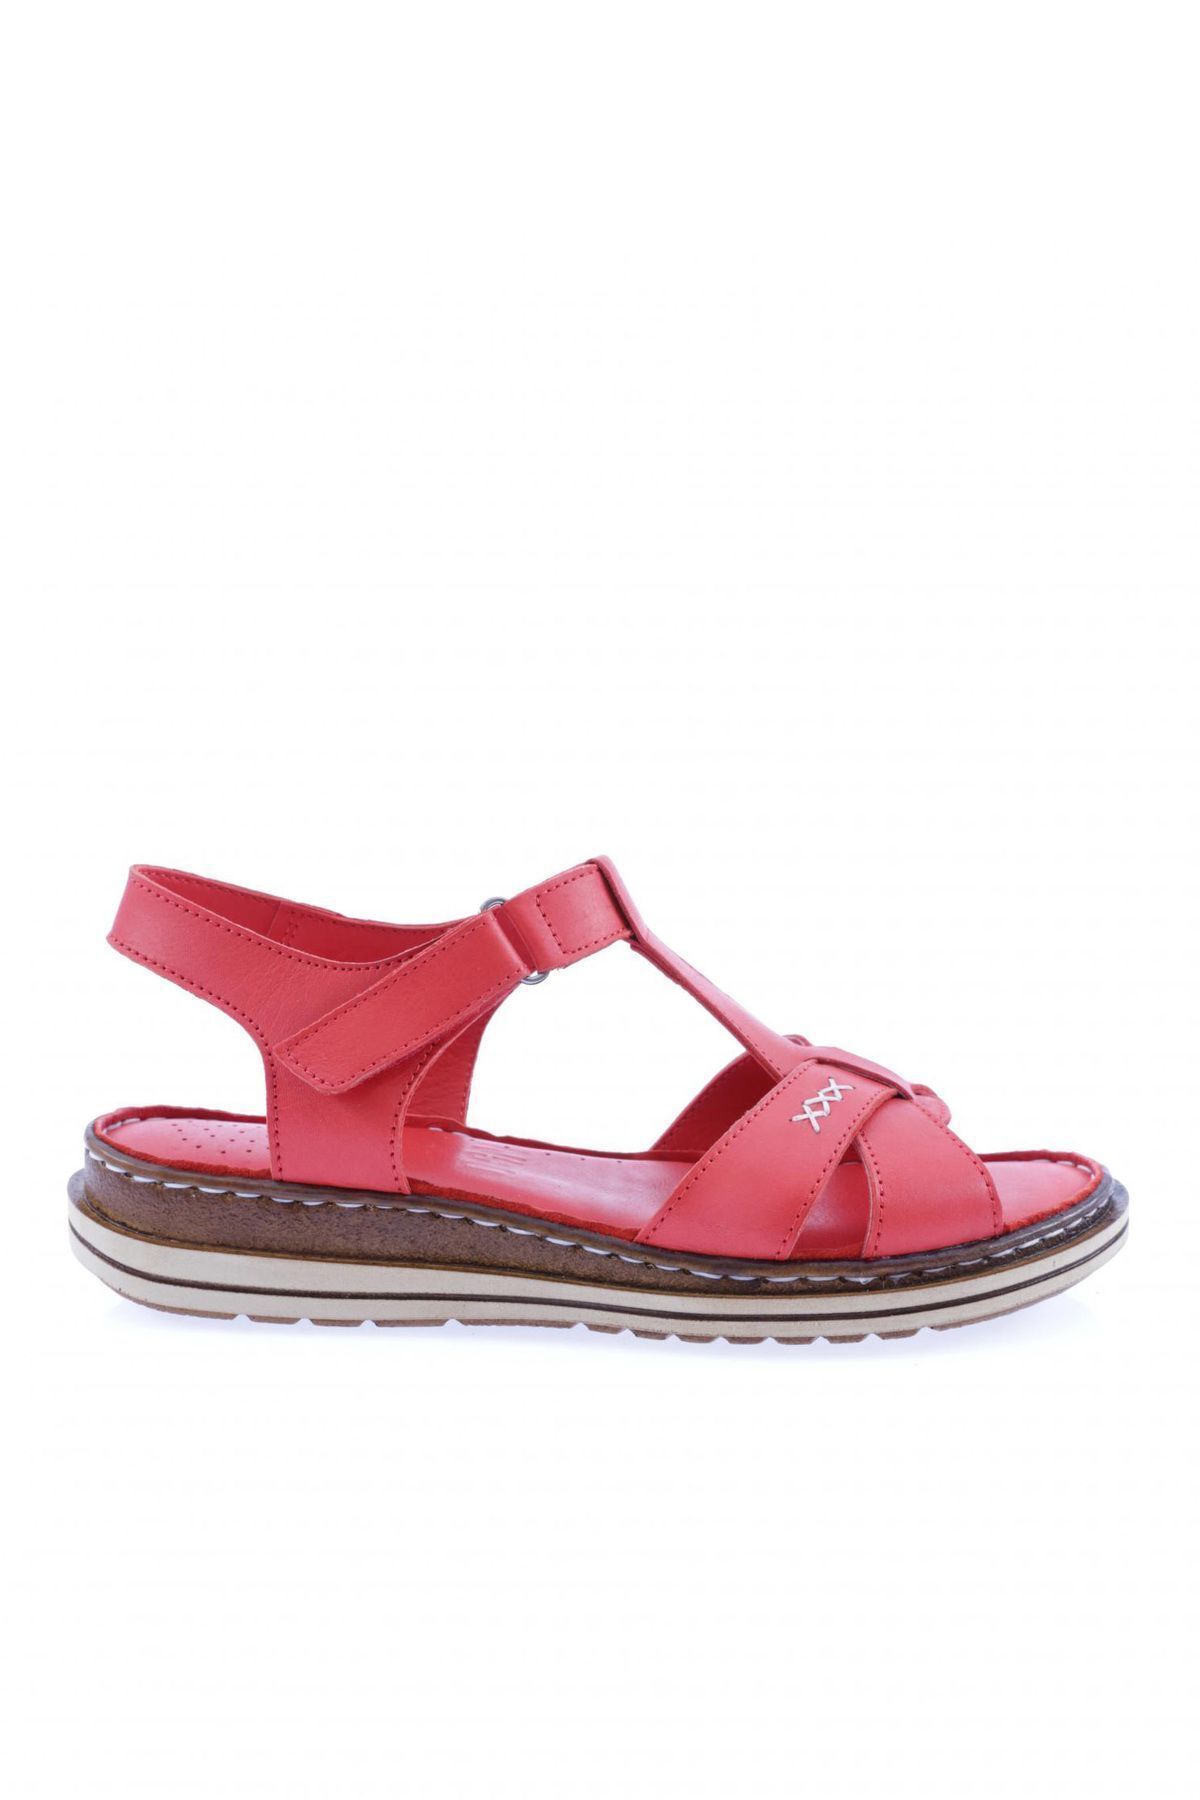 Dgn X002-23y Kadın Çapraz Bantlı Cırtlı Sandalet Hakiki Deri Kırmızı